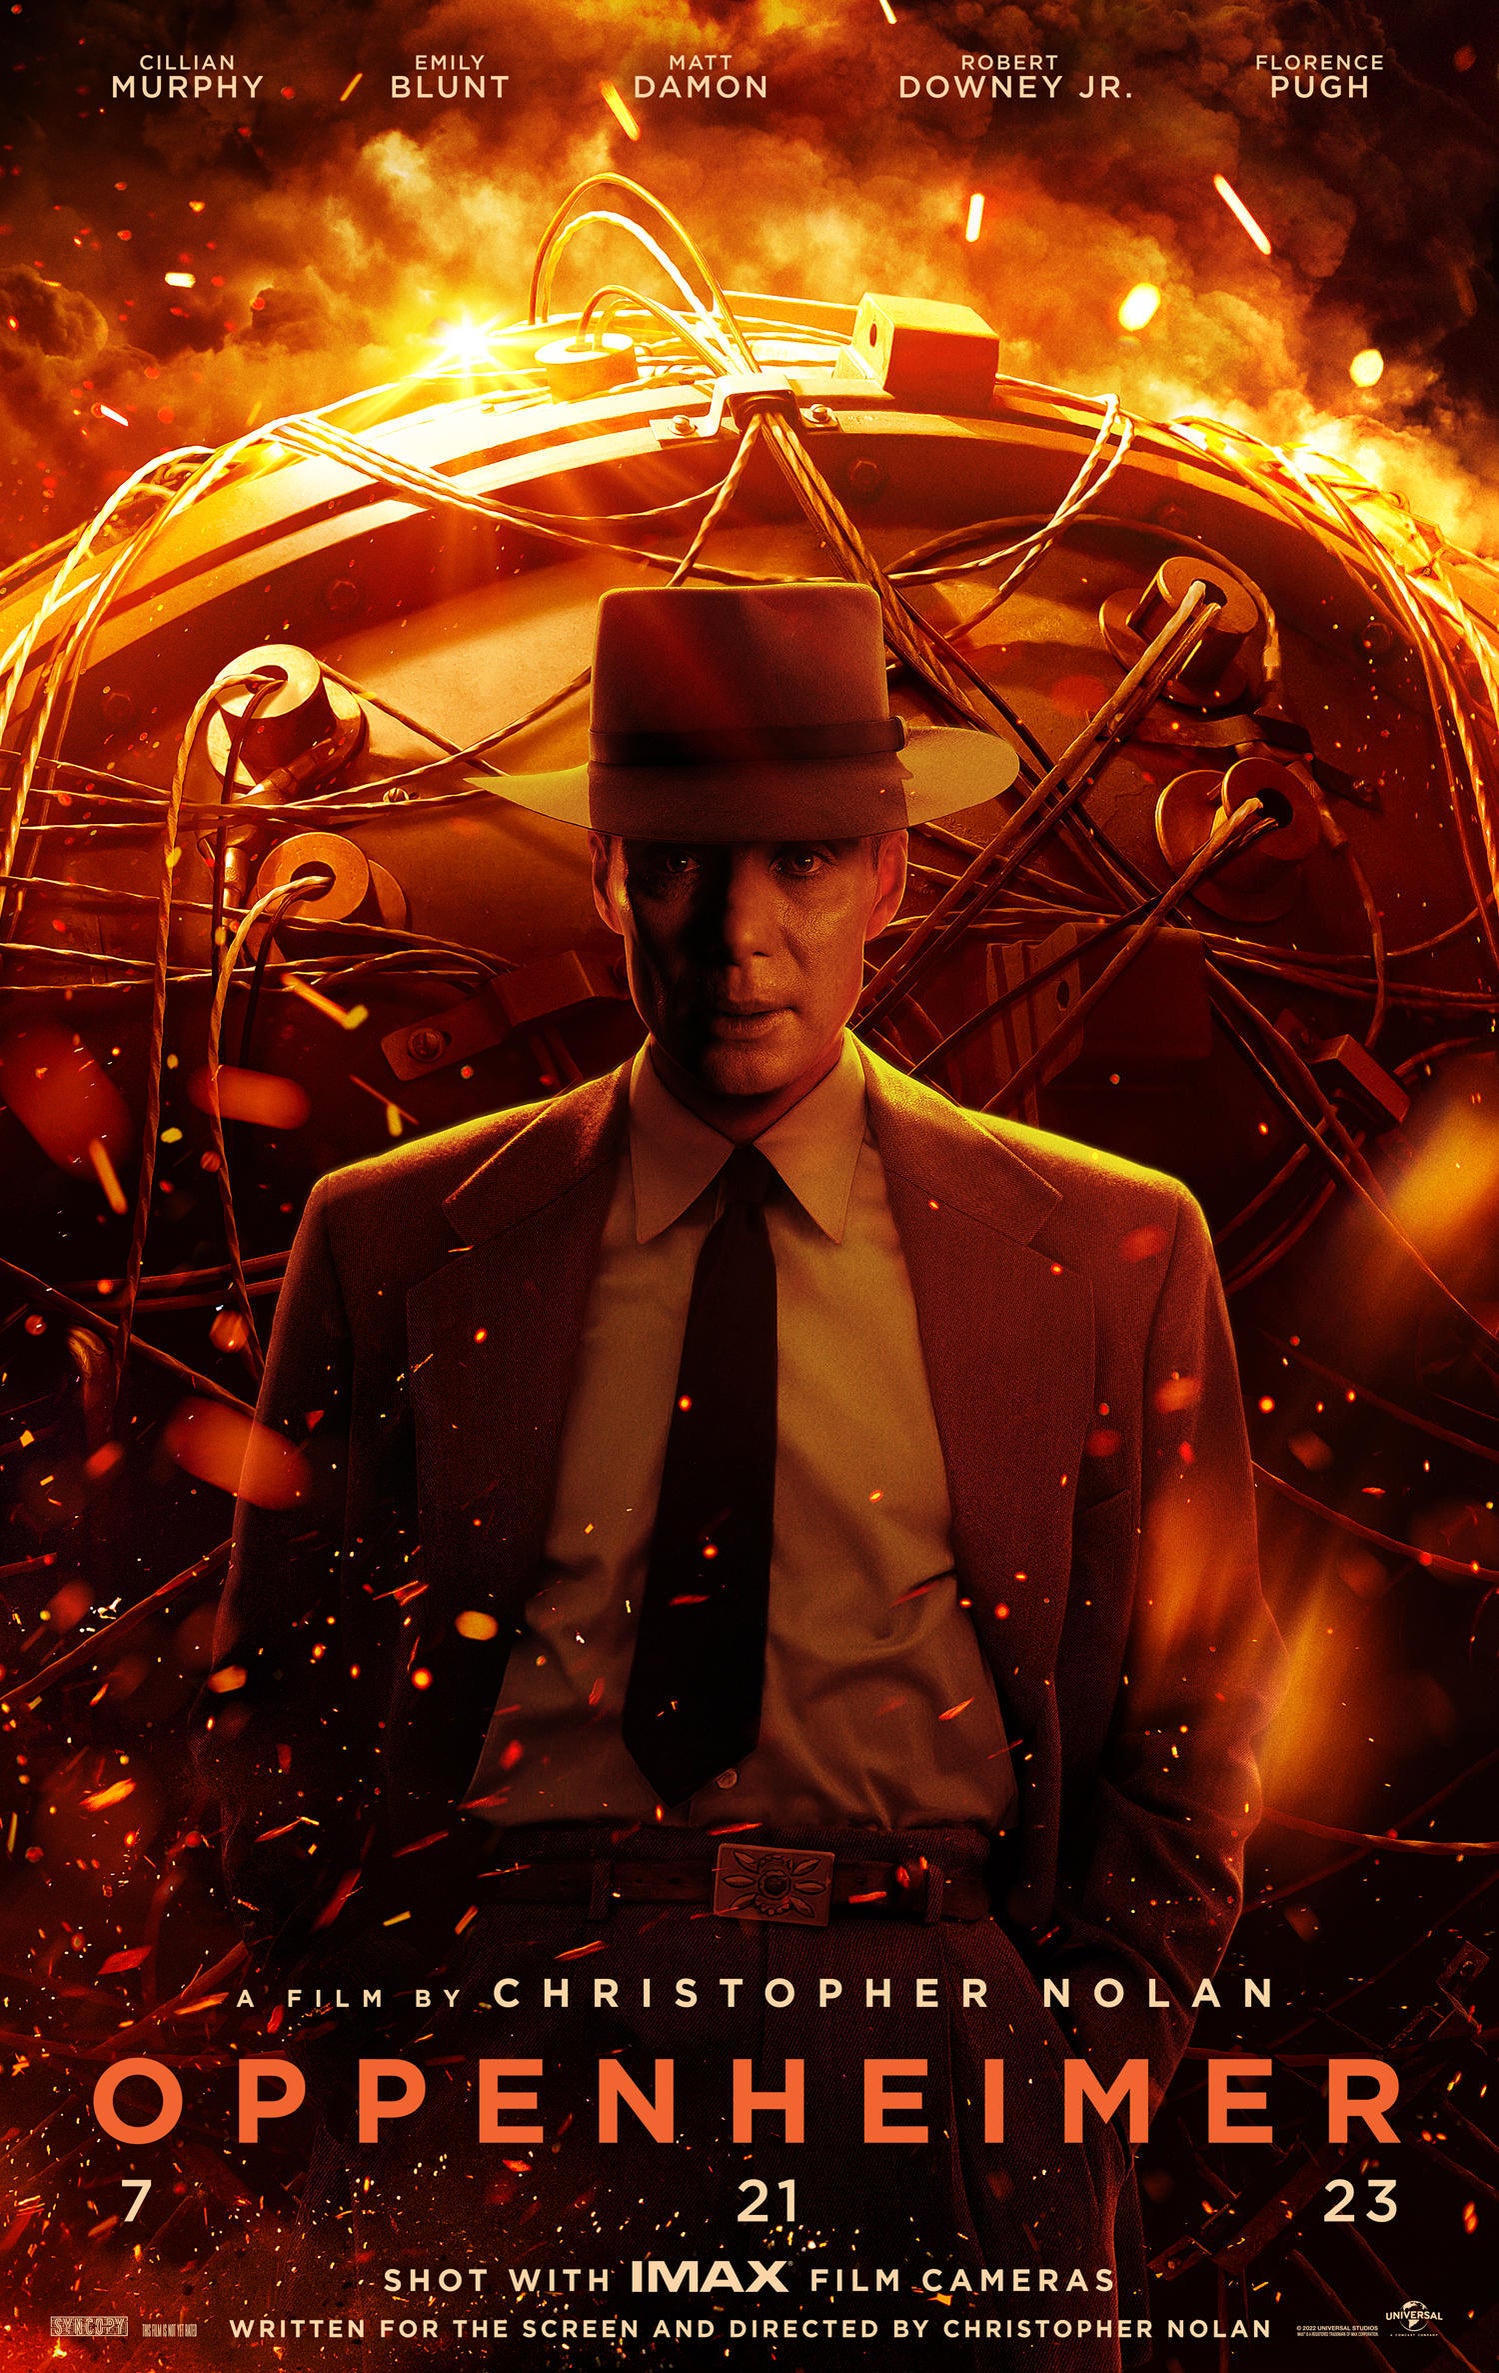 Christopher Nolan's Oppenheimer Gets New Poster